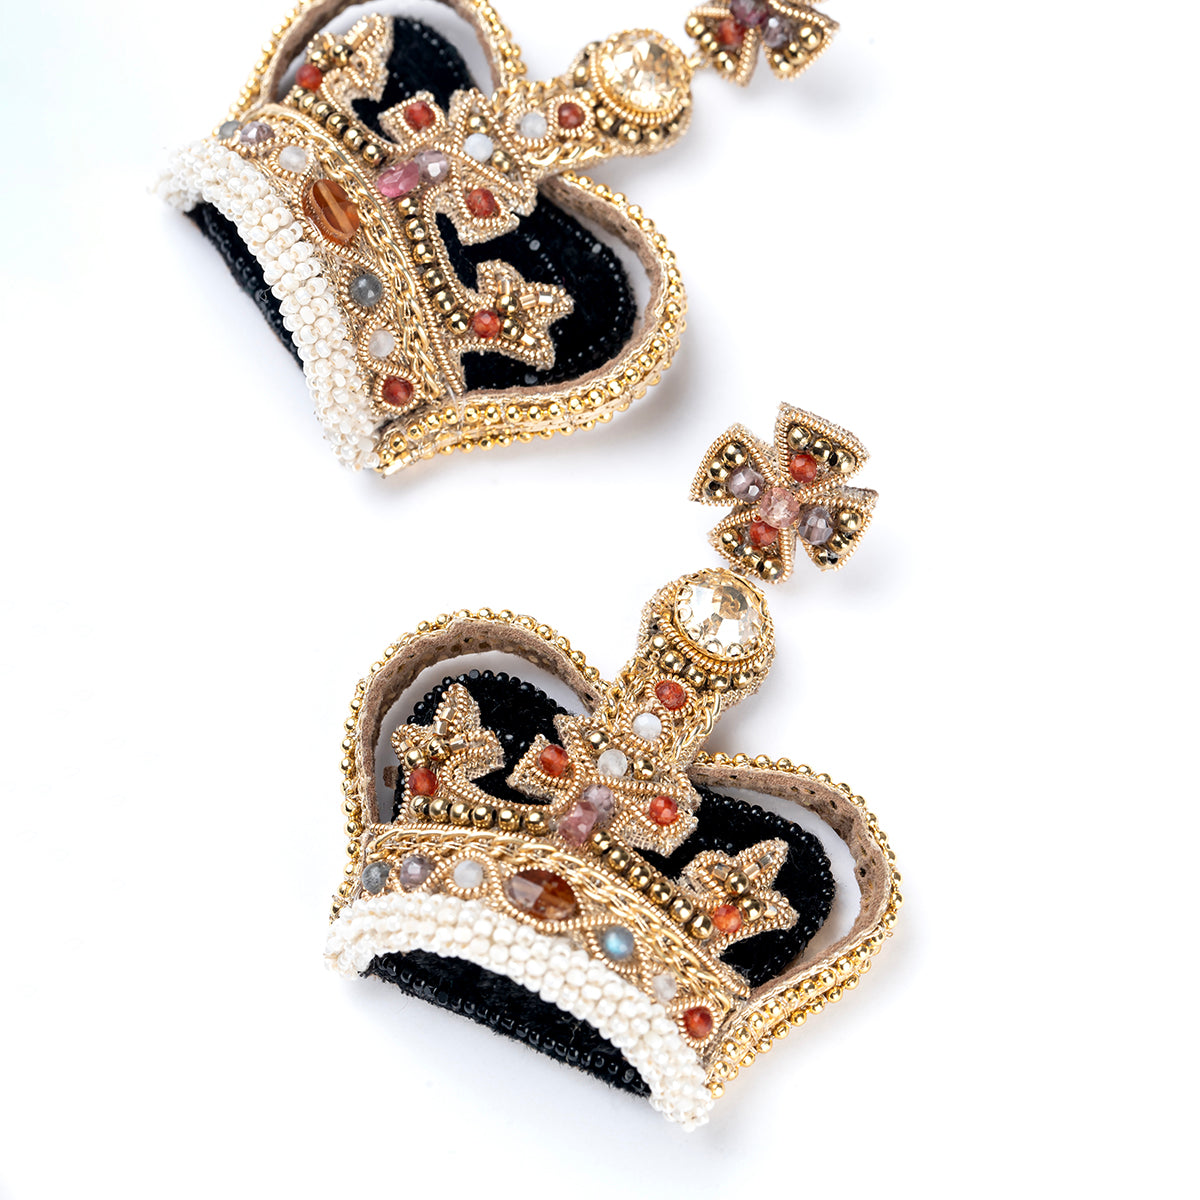 Deepa Gurnani handmade the Crown earrings in black color